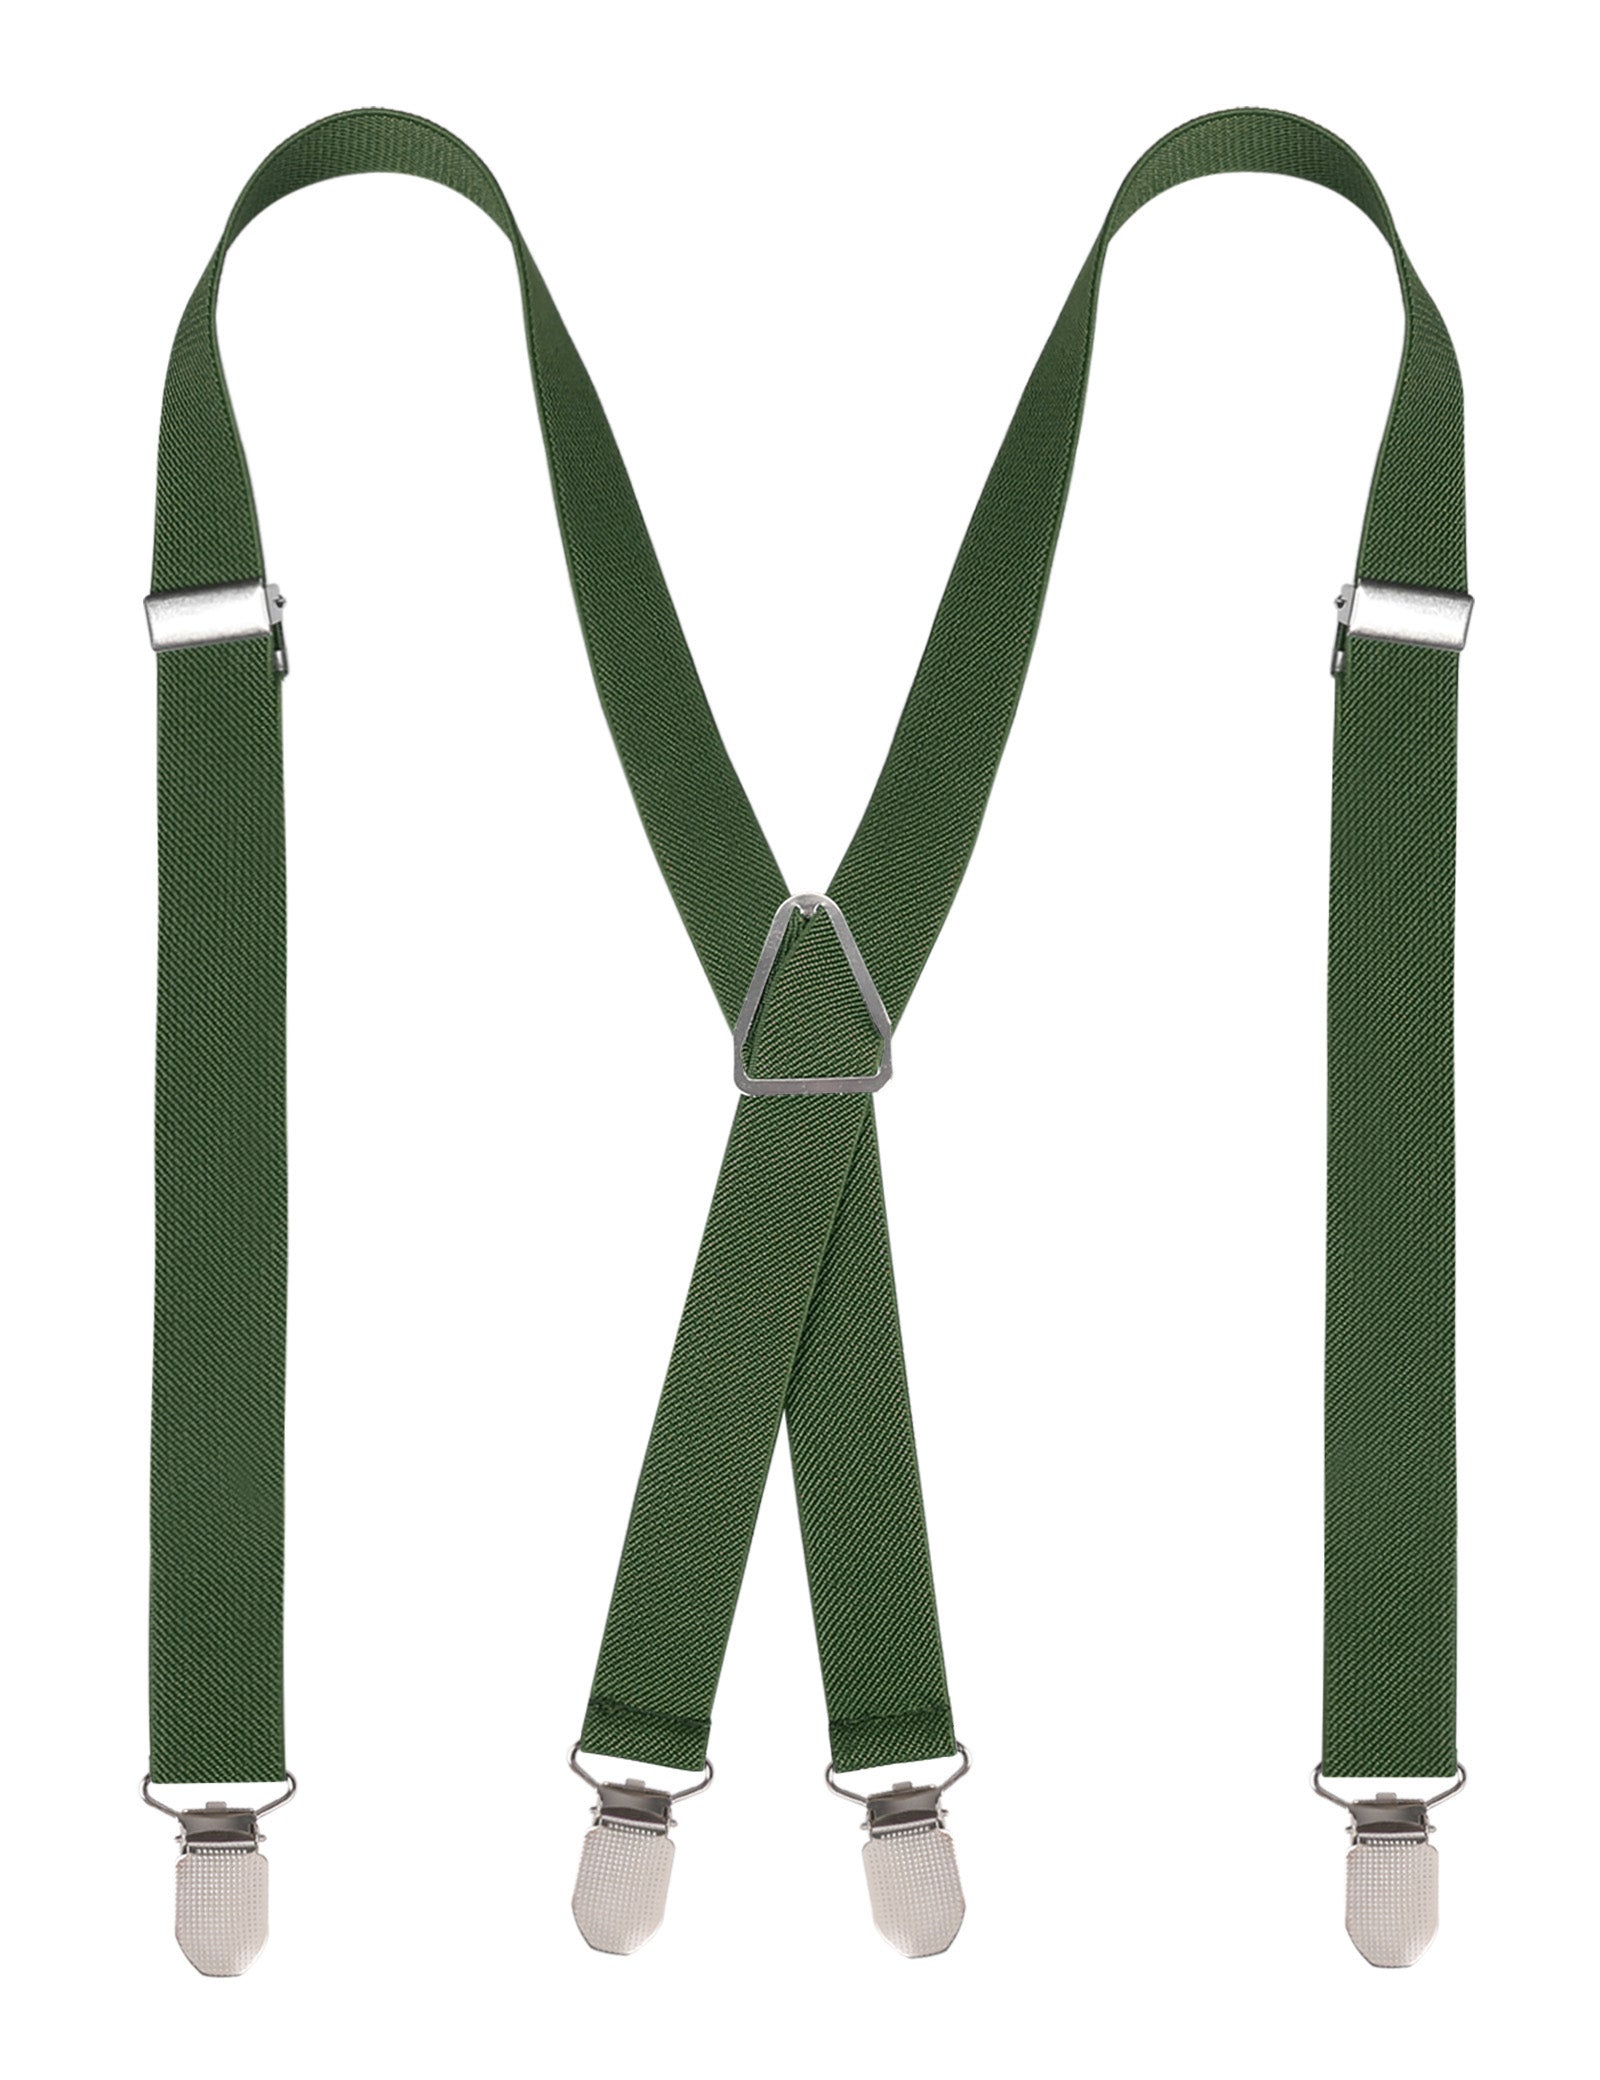 Men's X-Back Clip Suspenders Adjustable Elastic Shoulder Strap, BD064